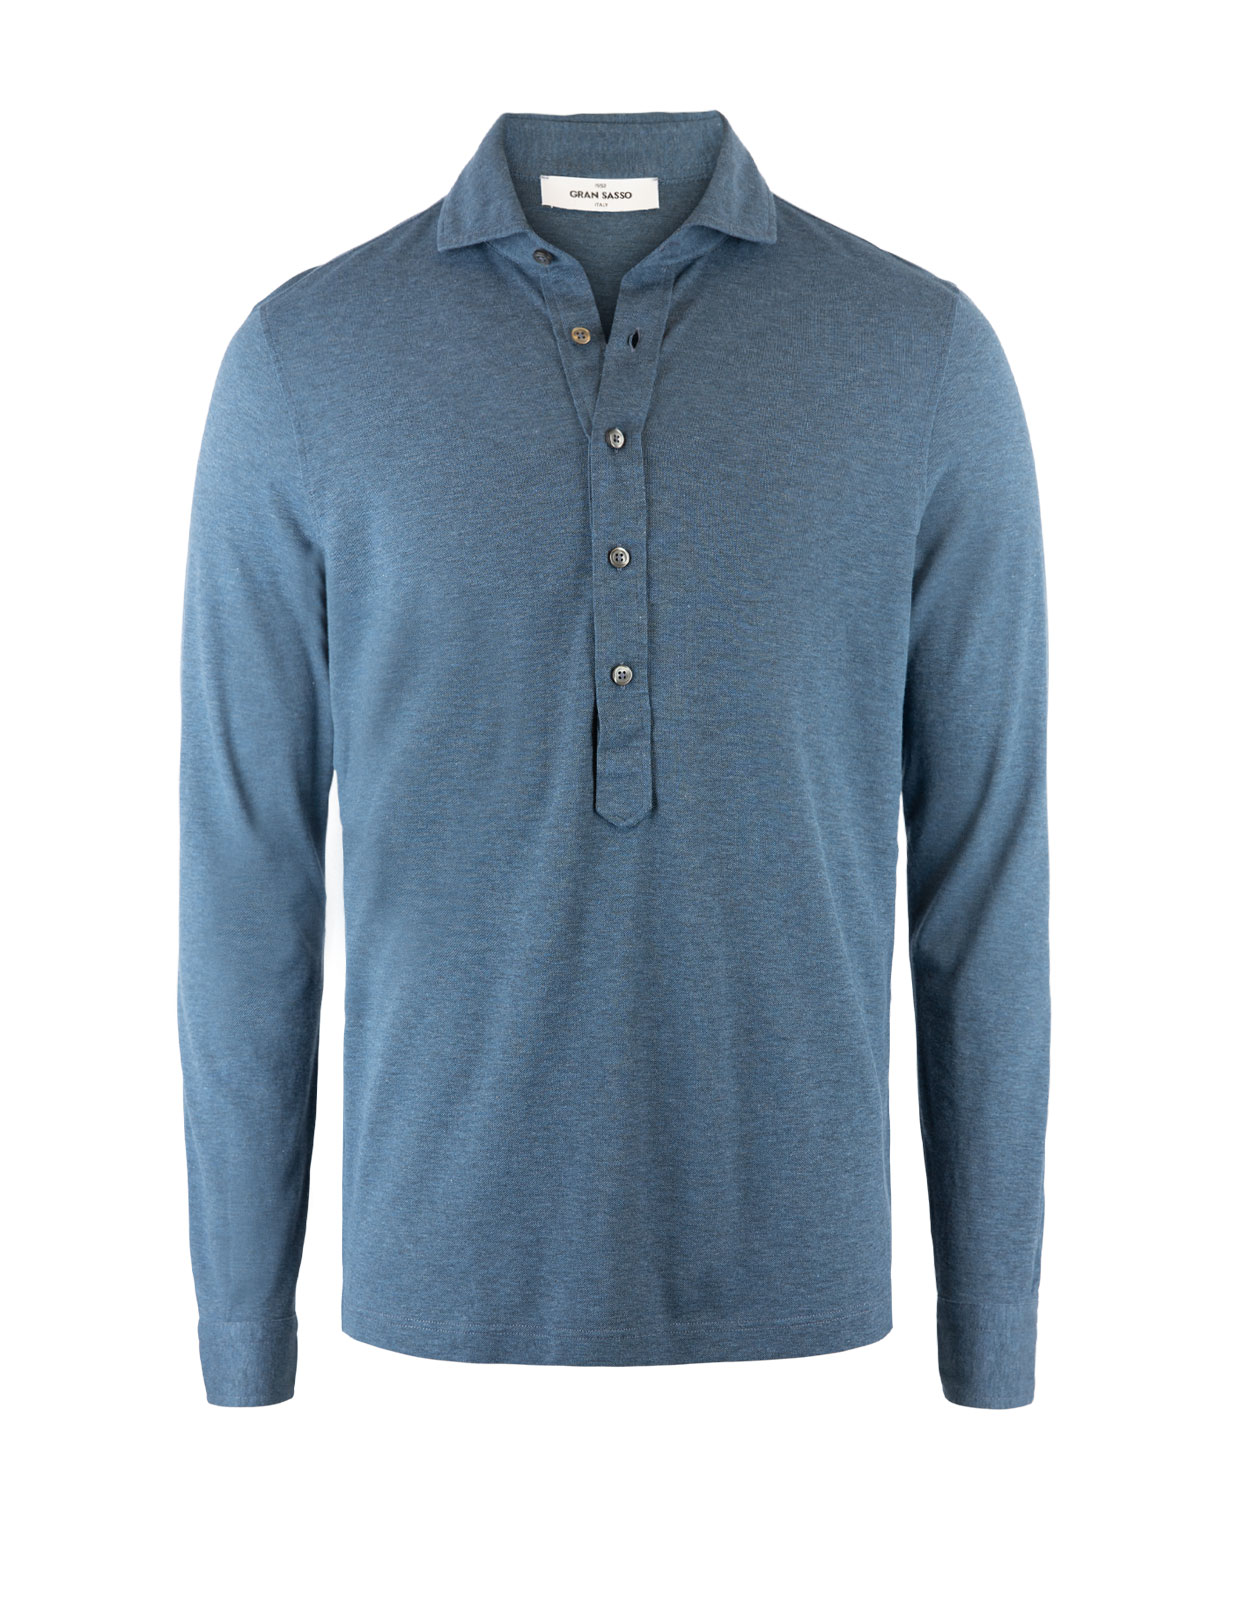 Jersey Popover Shirt Blue Melange Stl 48